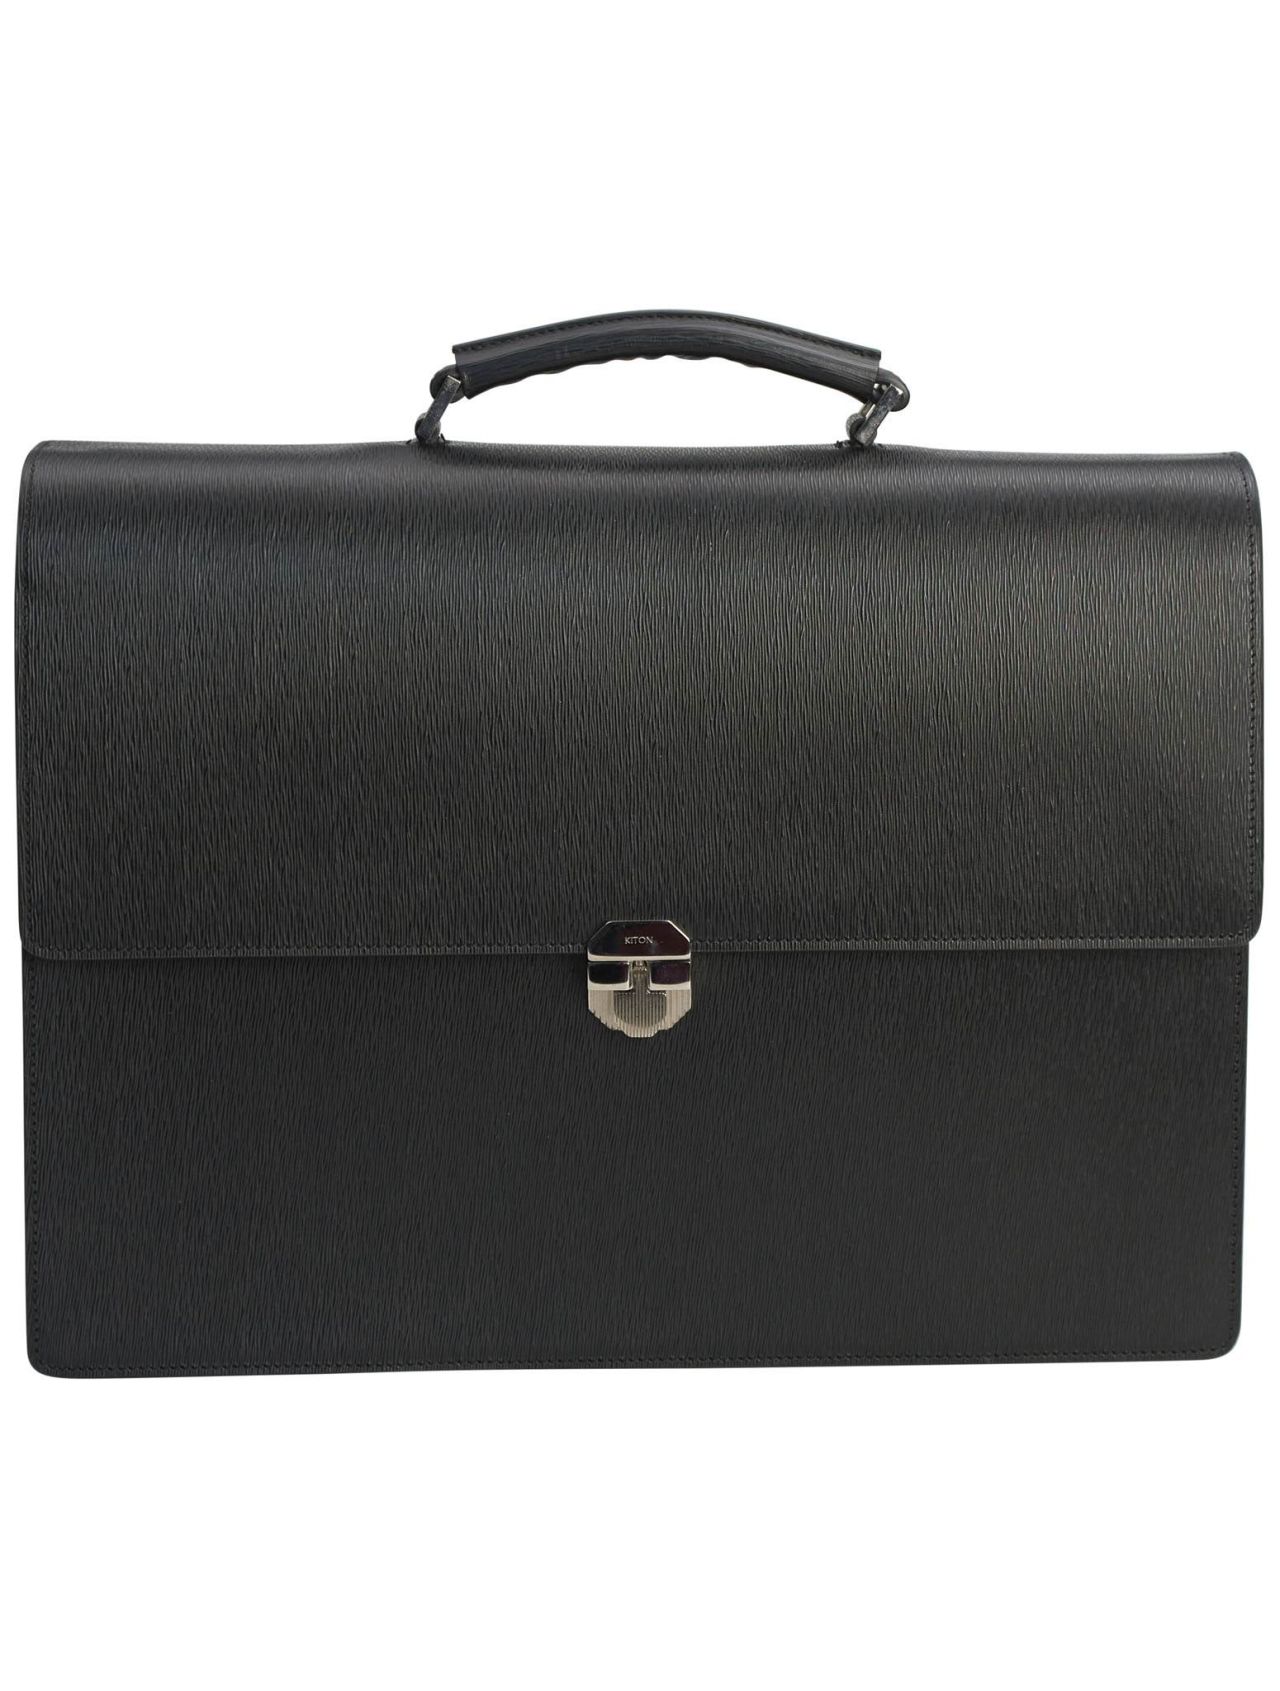 Kiton Black Leather Bag | IsuiT